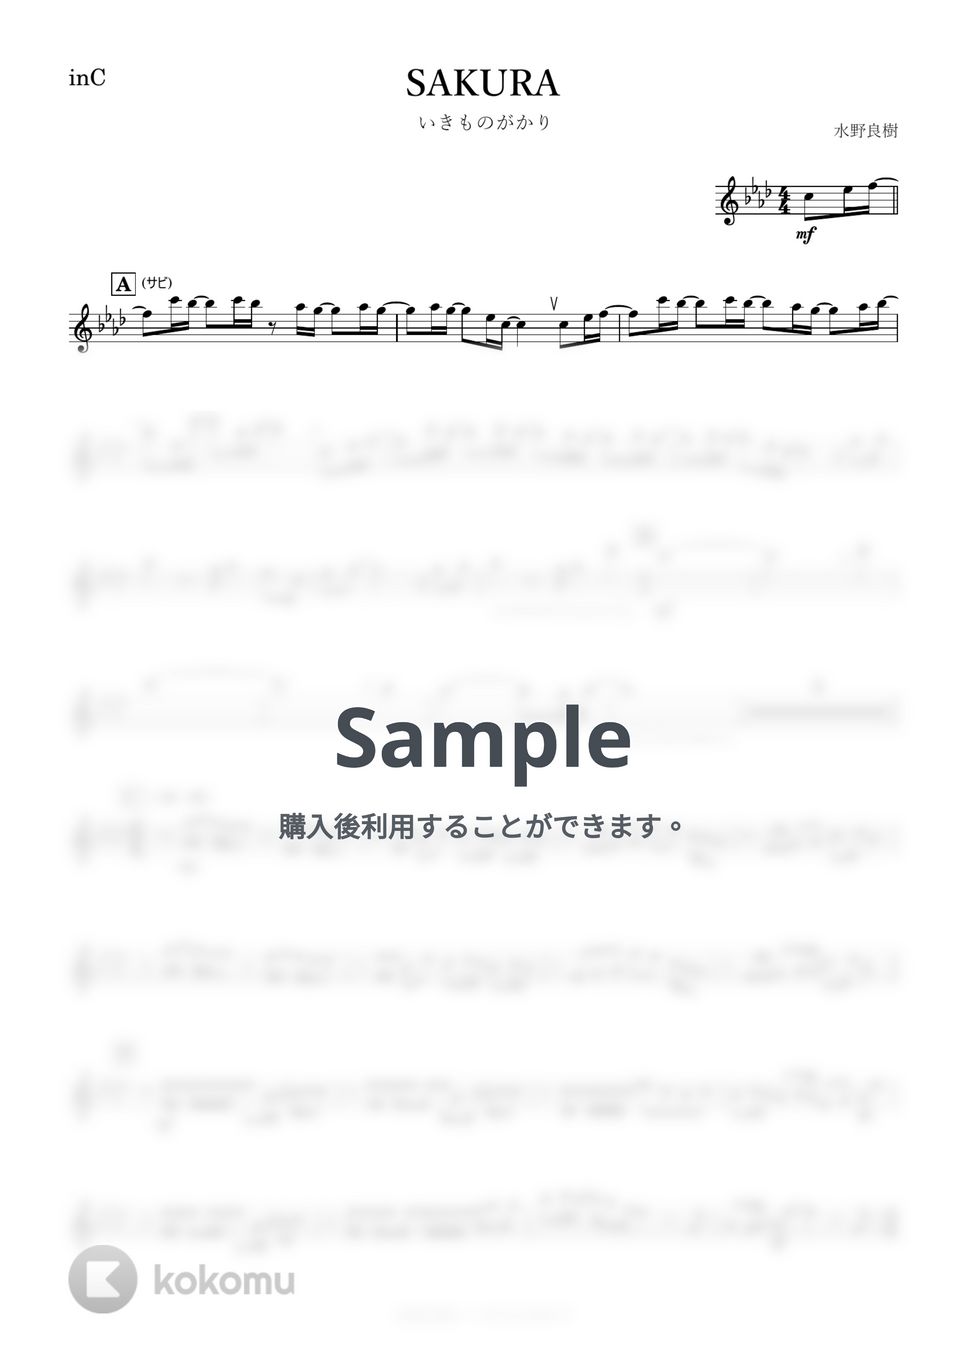 いきものがかり - SAKURA (C) by kanamusic